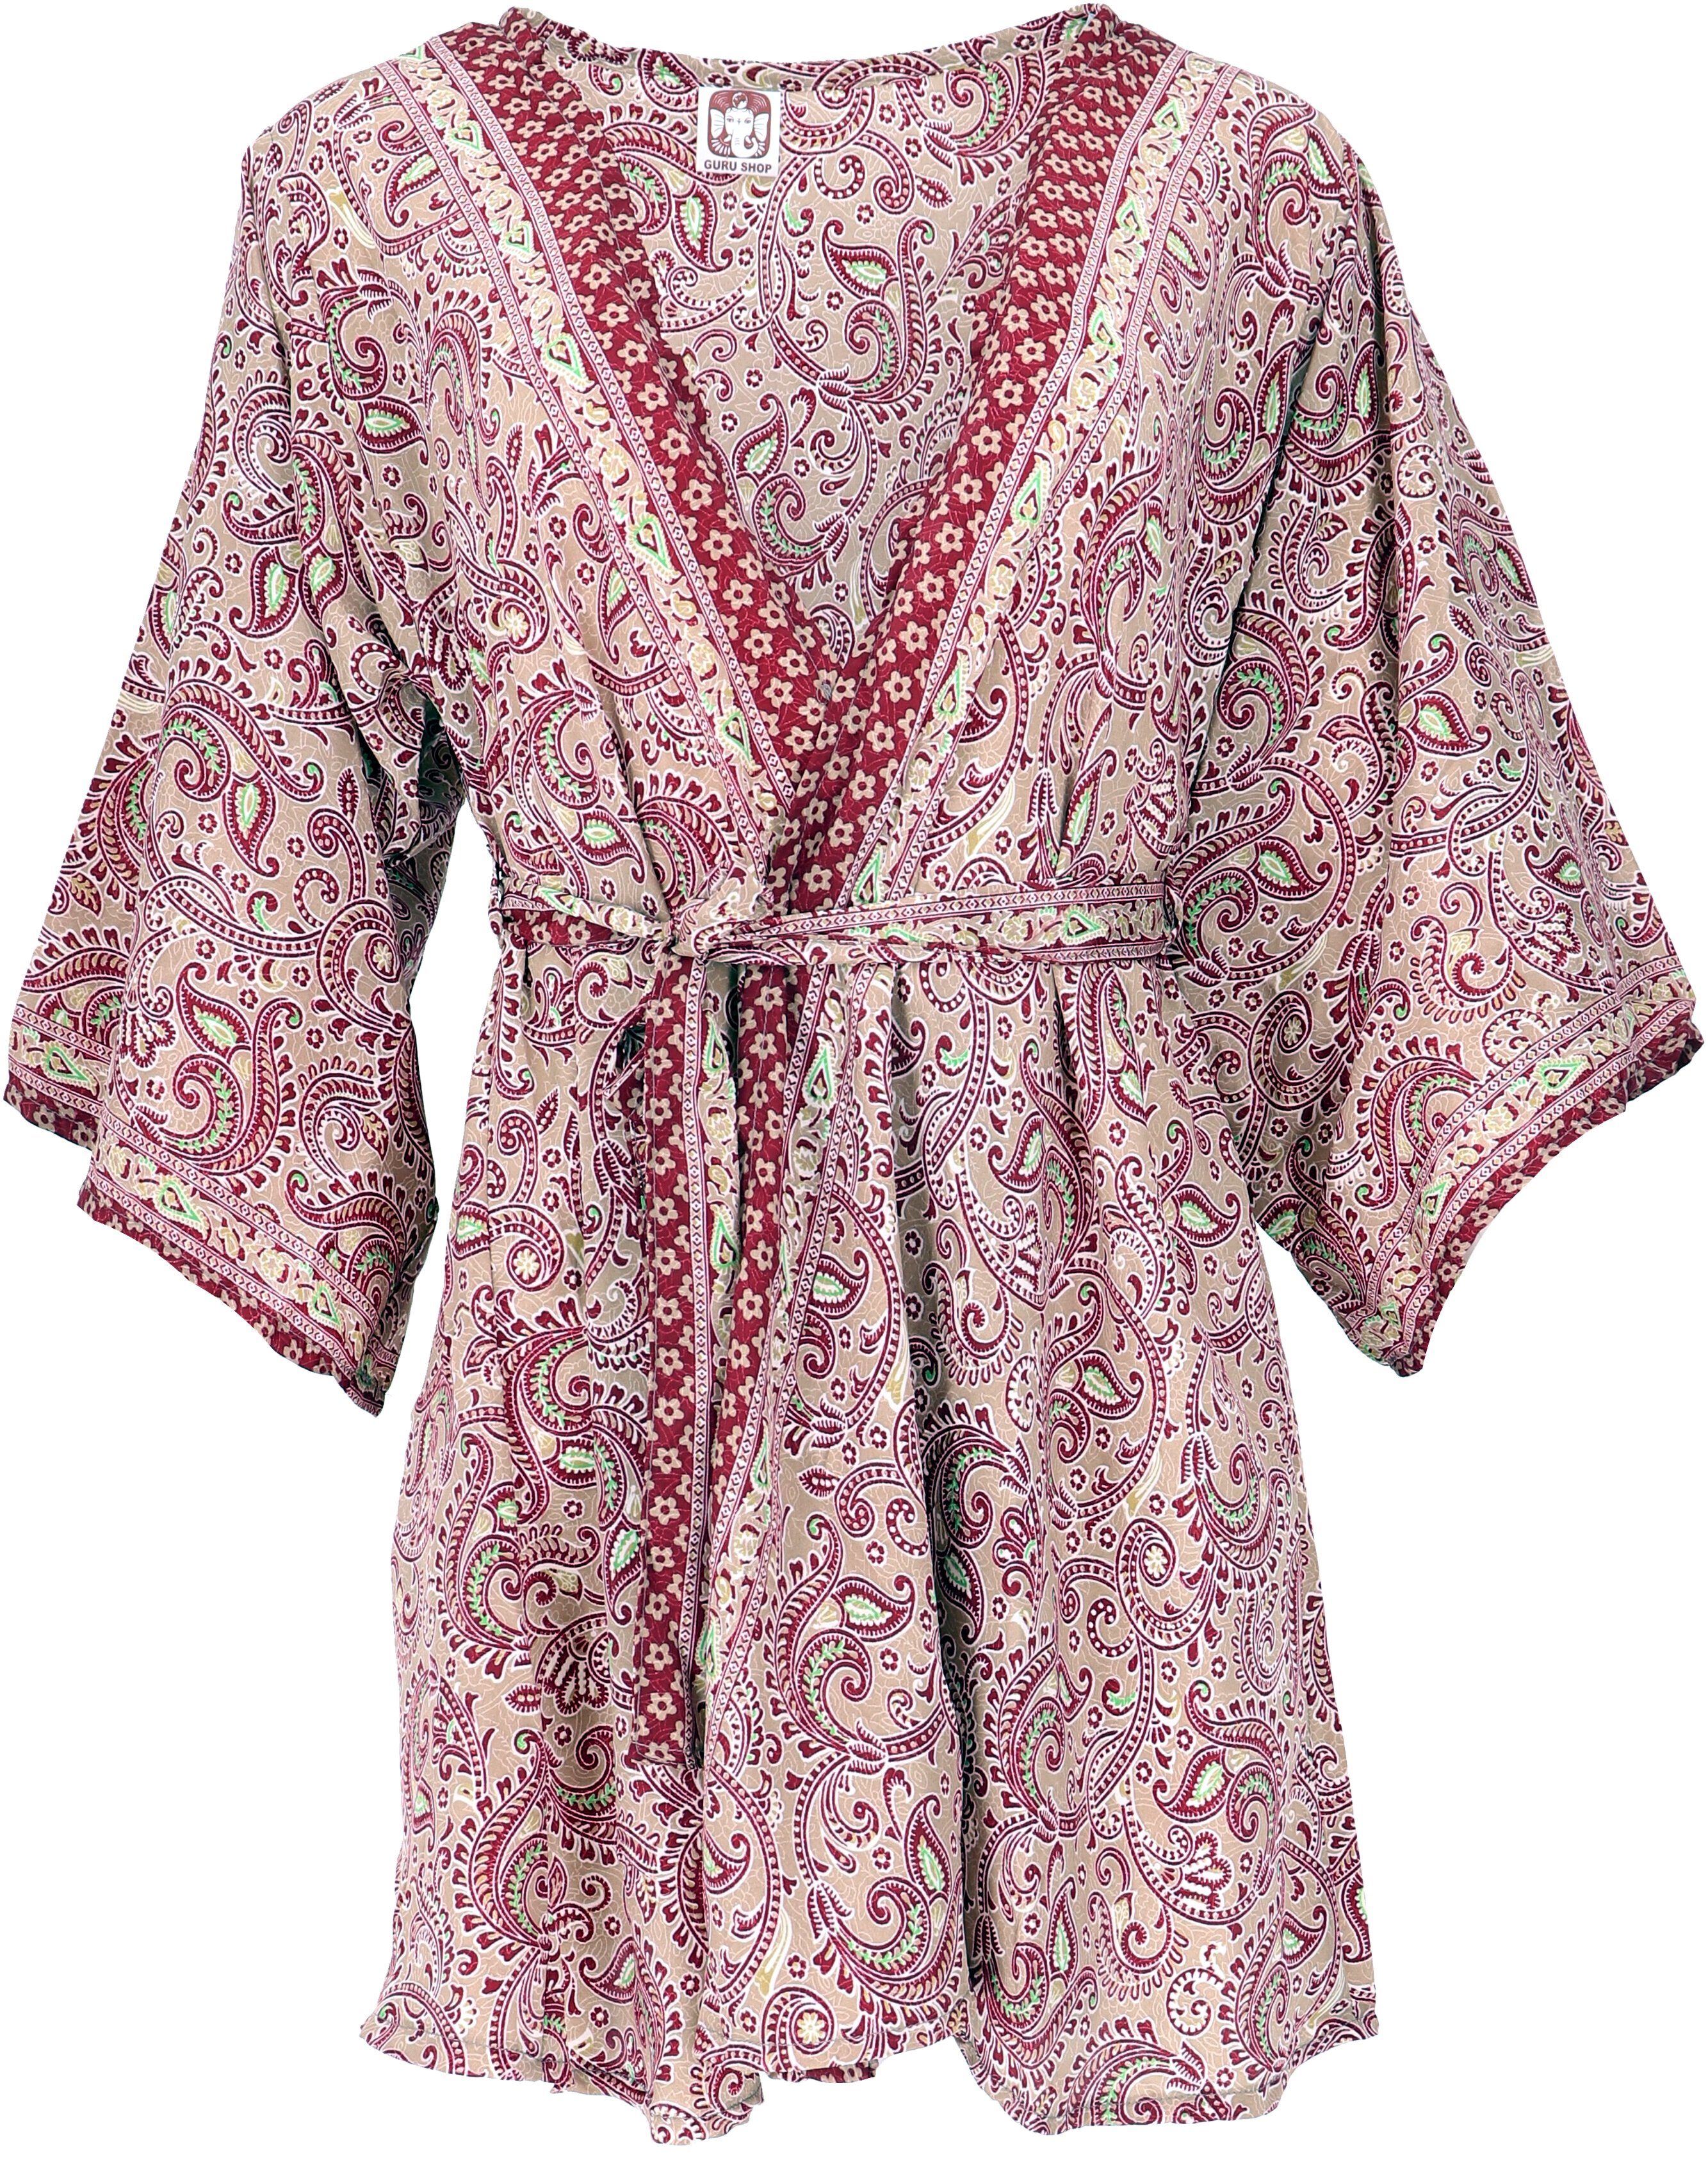 Kimonojäckchen, alternative Kimonokleid.., kurzer Guru-Shop Bekleidung Kimono, beige/bordeaux Boho Kimono